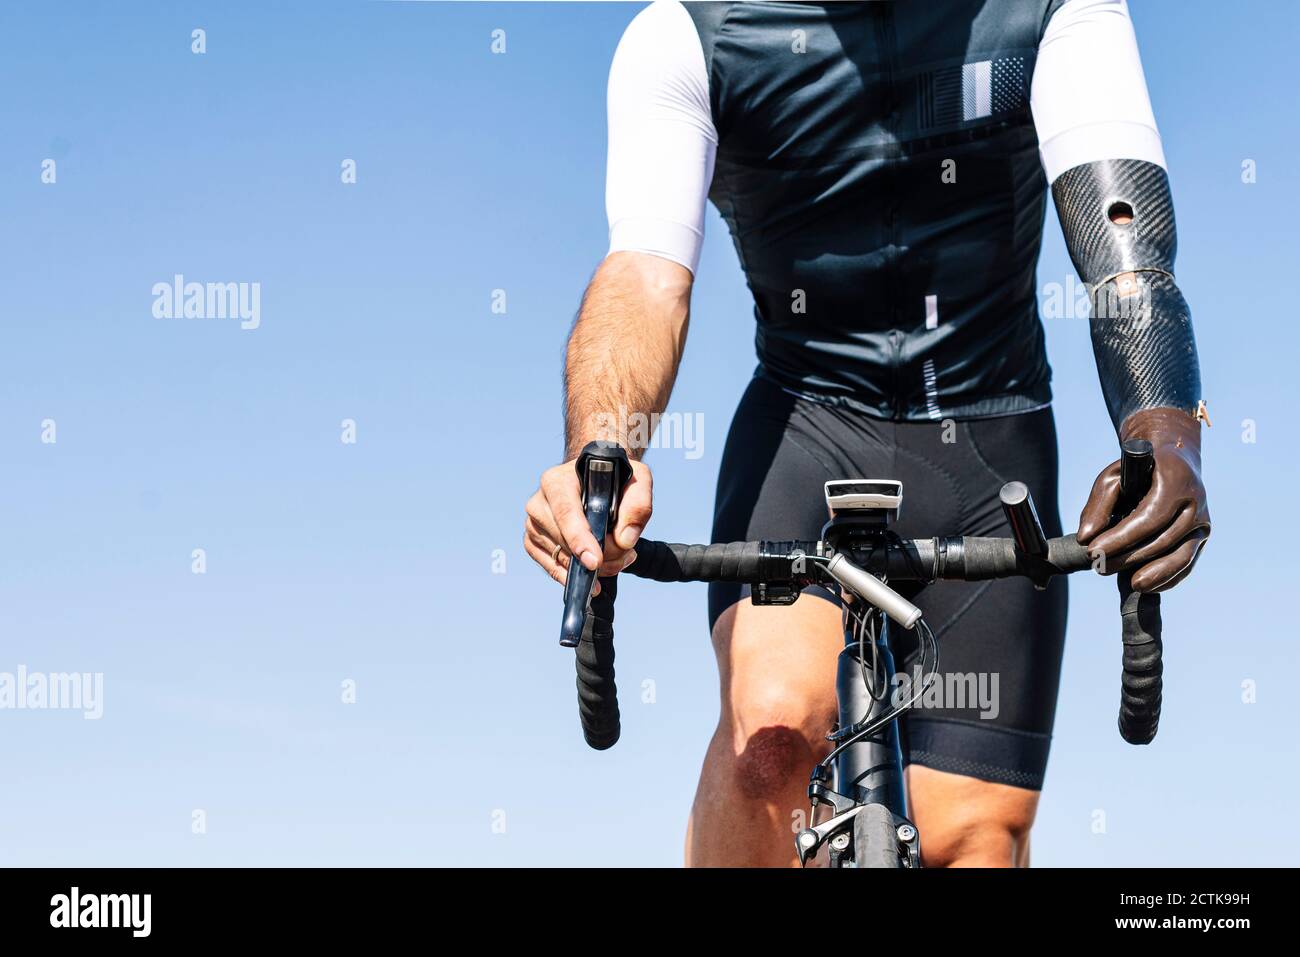 Ropa deportiva ciclismo azul e imágenes de alta resolución